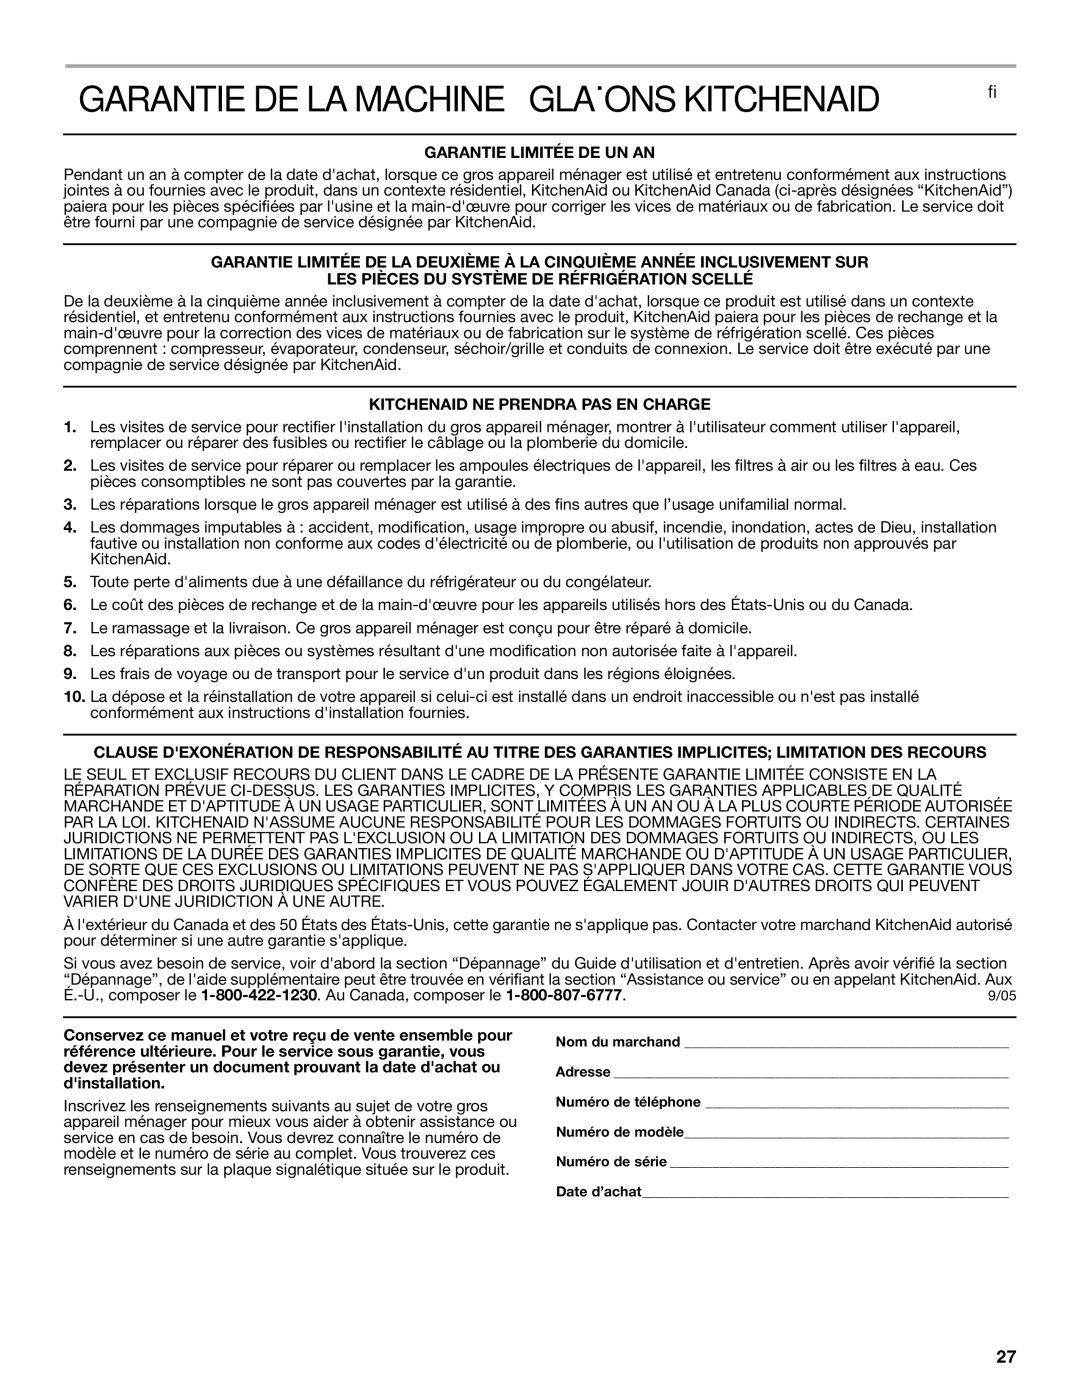 KitchenAid 2313684A manual Garantie DE LA Machine À Glaçons Kitchenaid, Garantie Limitée DE UN AN 